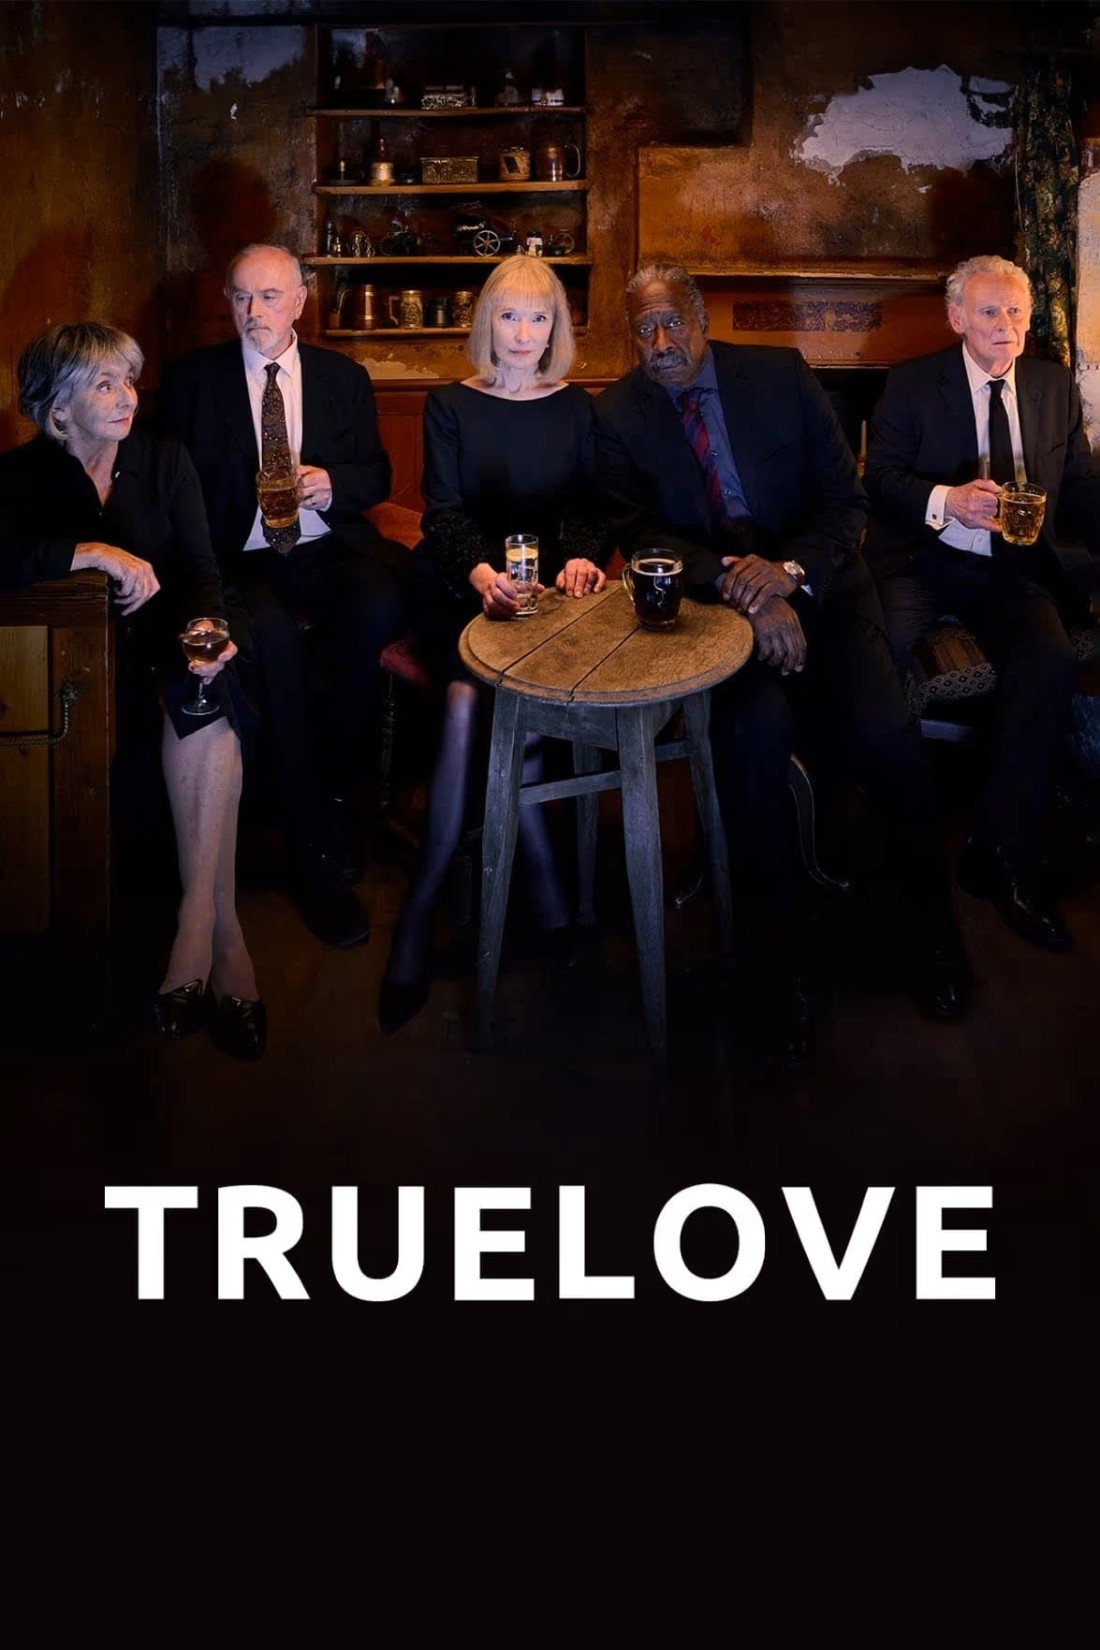 Truelove S01E06 [1080p/720p] WEB-DL (x264) E4a1b67b606d5e9439358370cf3c2f48